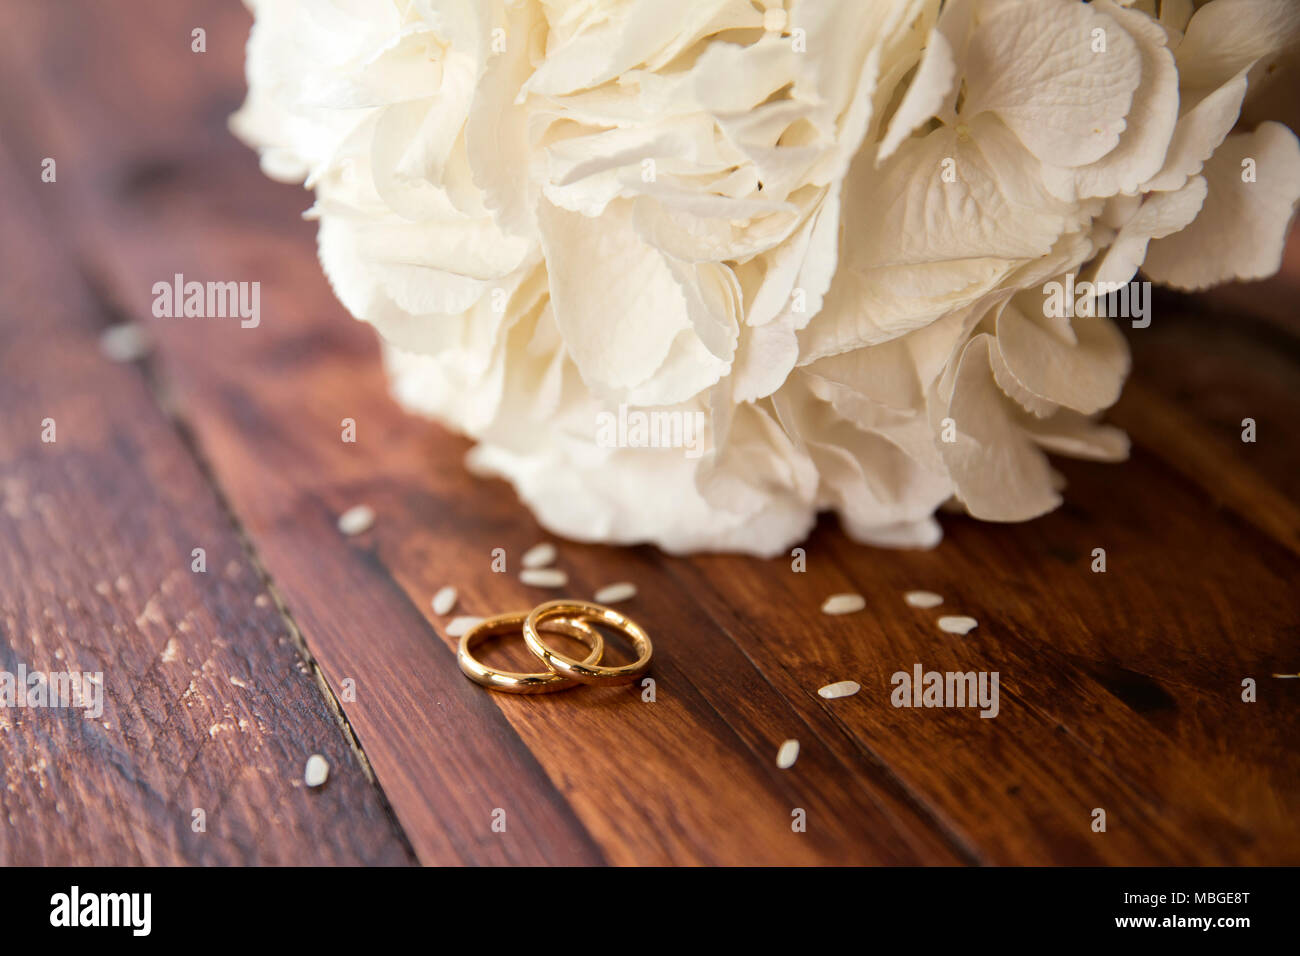 Inquadratura orizzontale di un bouquet nuziale con gli anelli di nozze con i chicchi di riso sul tavolo un bouquet nuziale e anelli d oro sono al buio su un tavolo di legno Foto Stock